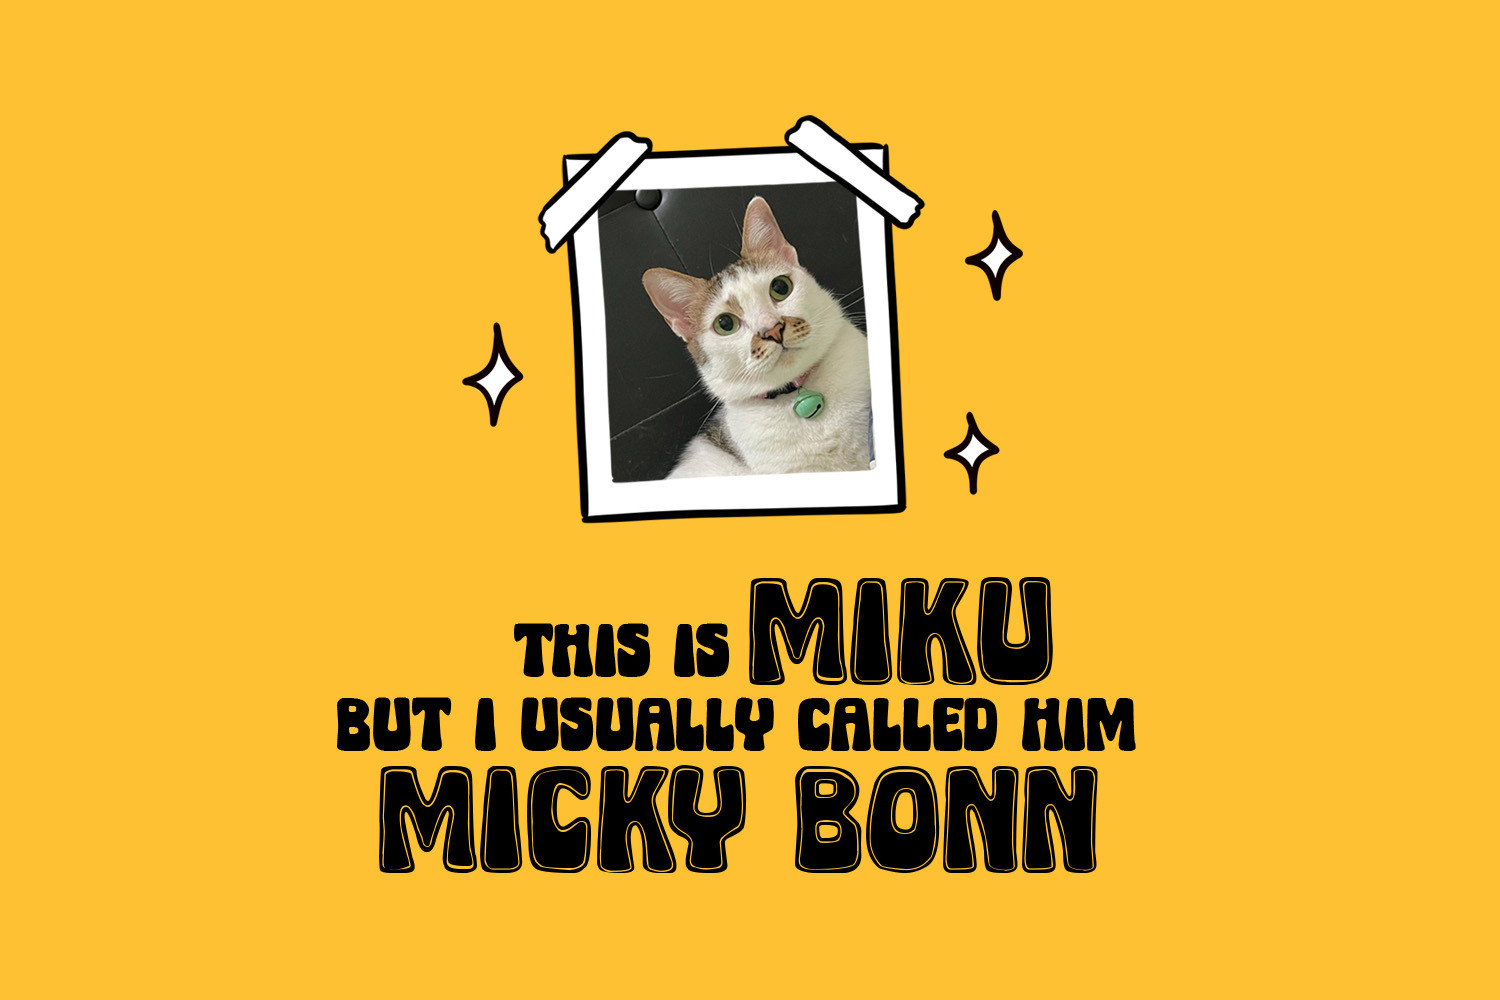 Micky Bonn Inline